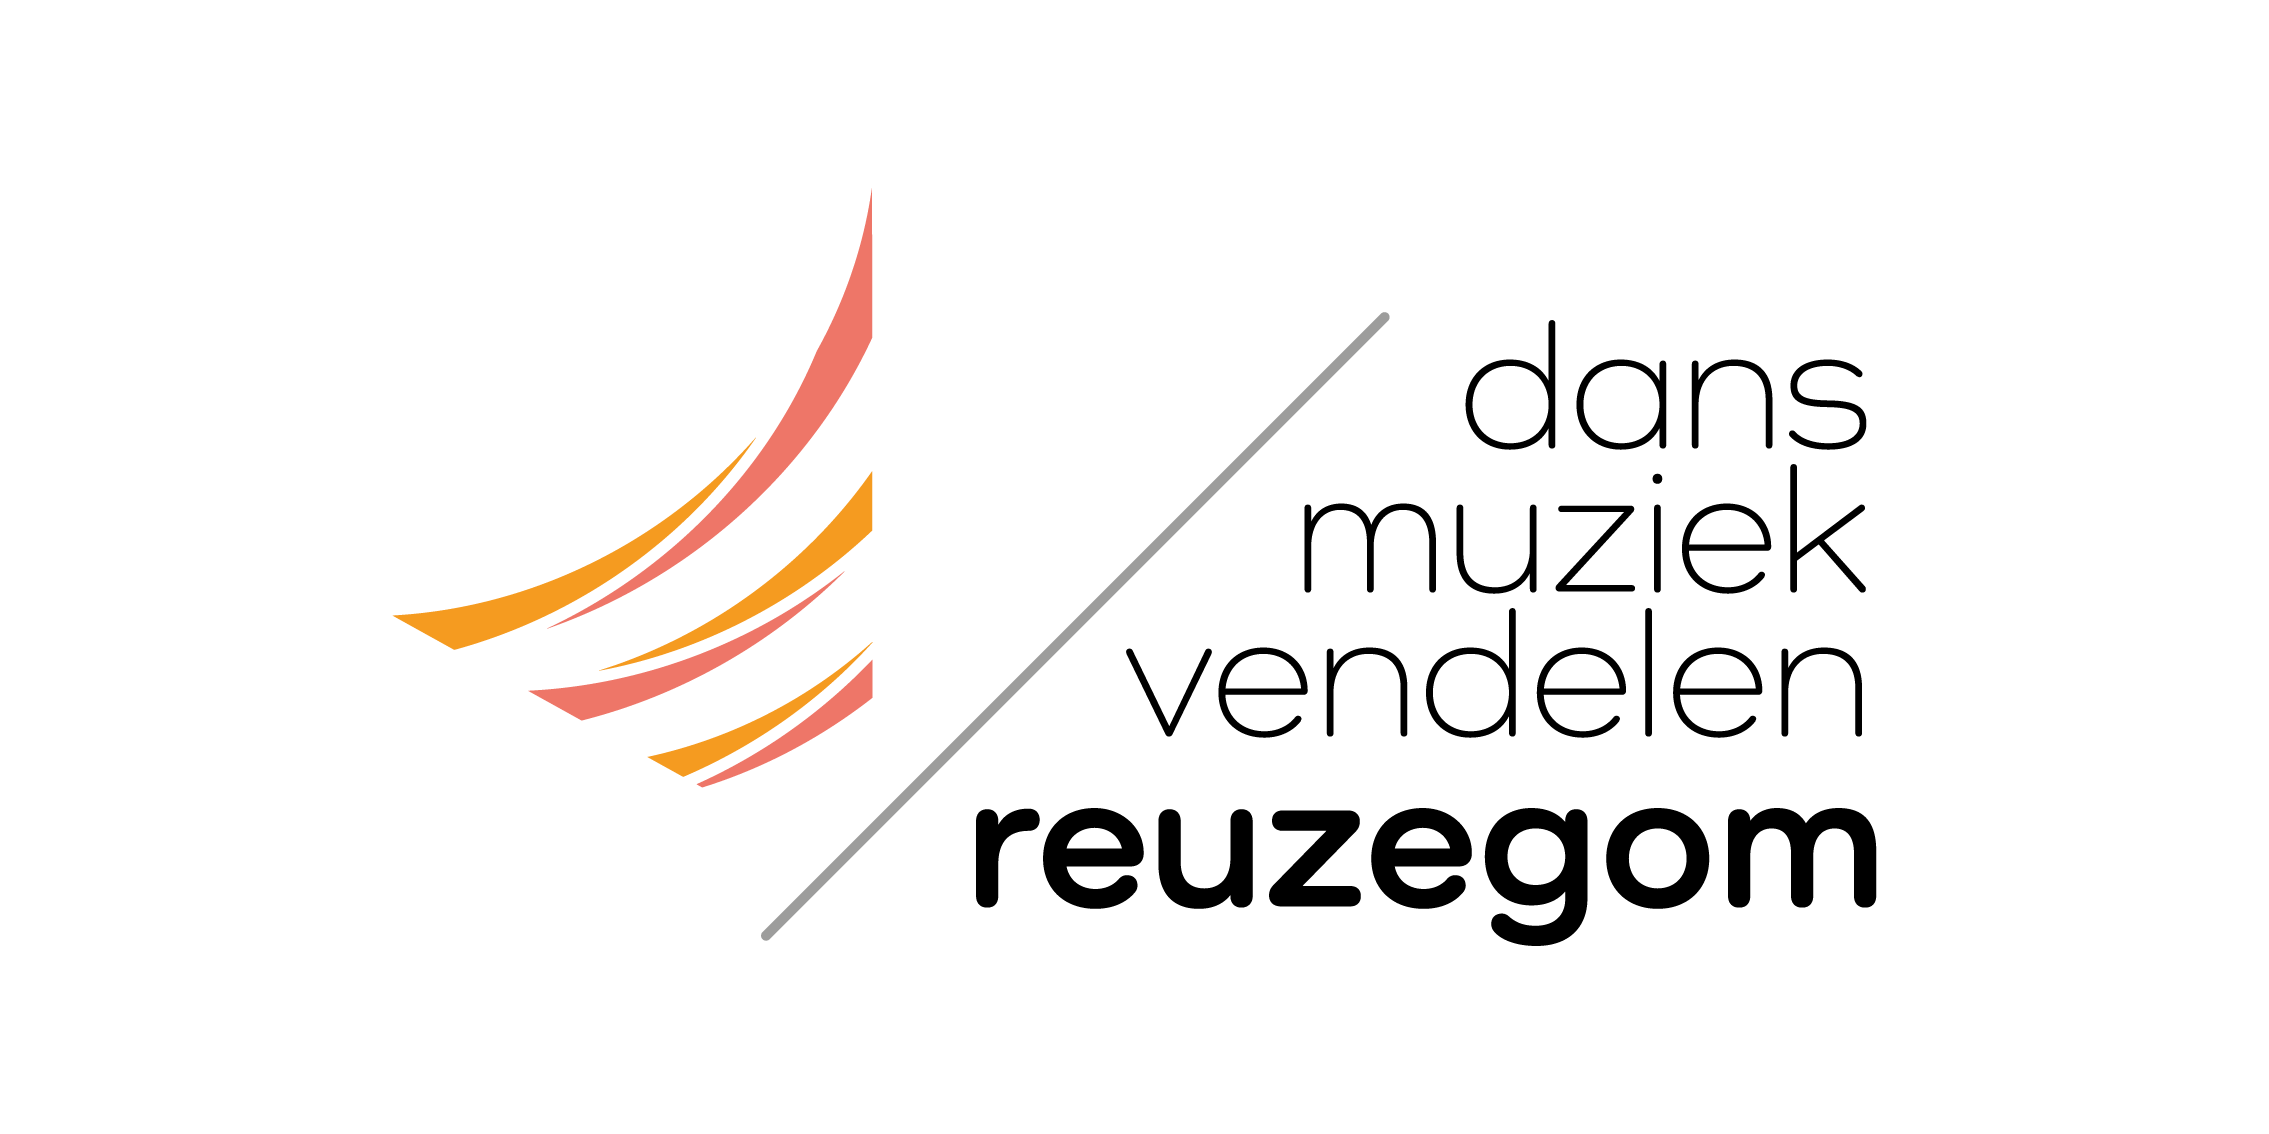 Logo Reuzegom dans muziek vendelen